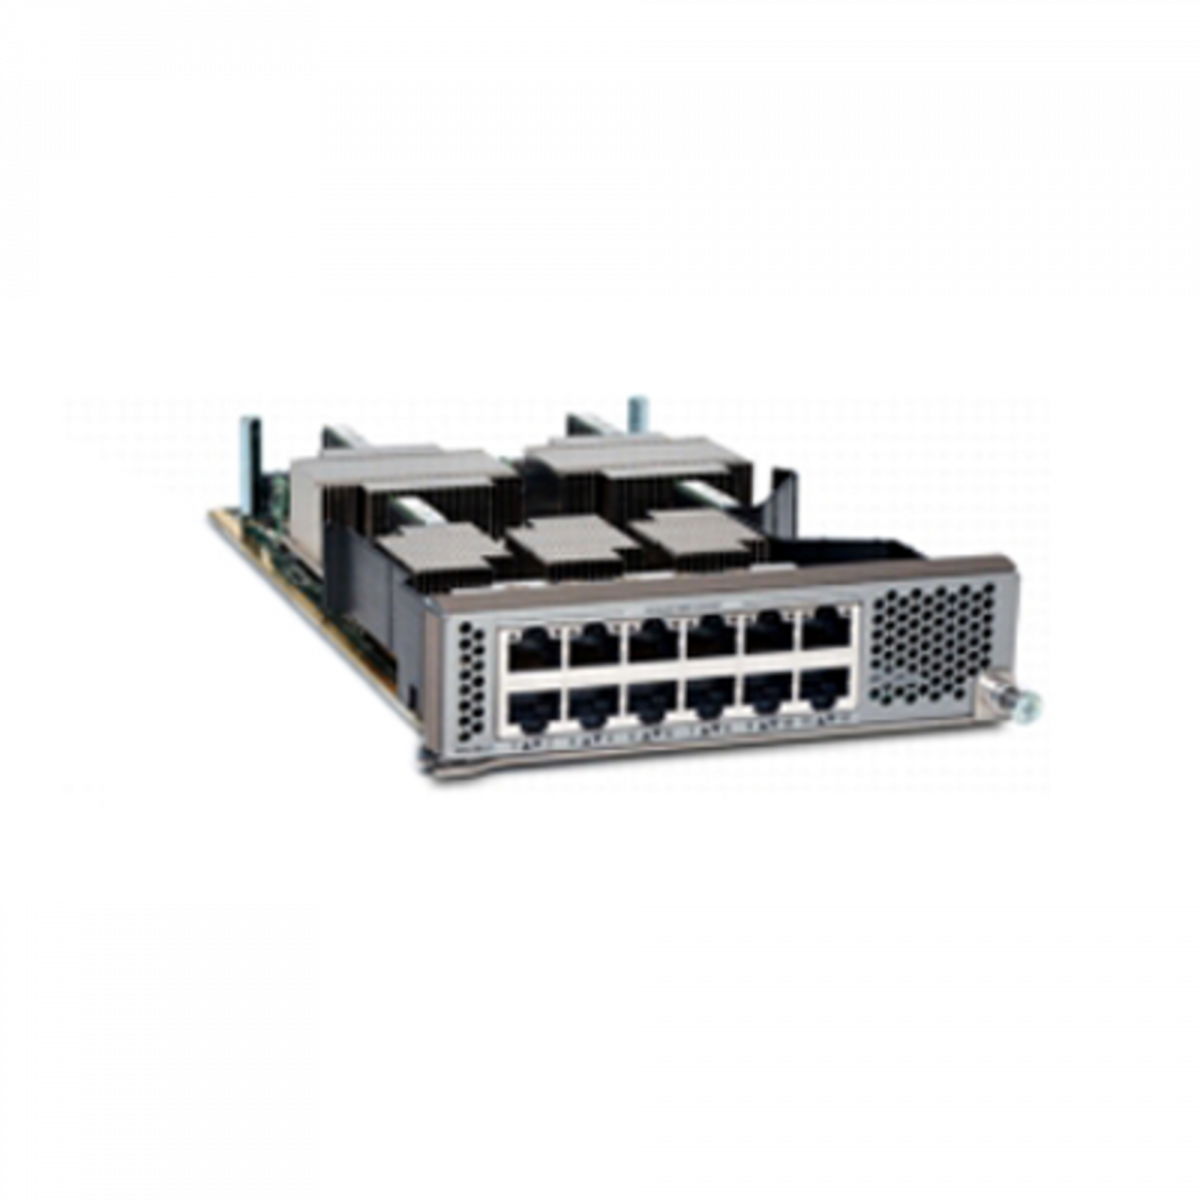 Модуль Cisco N55-M12T